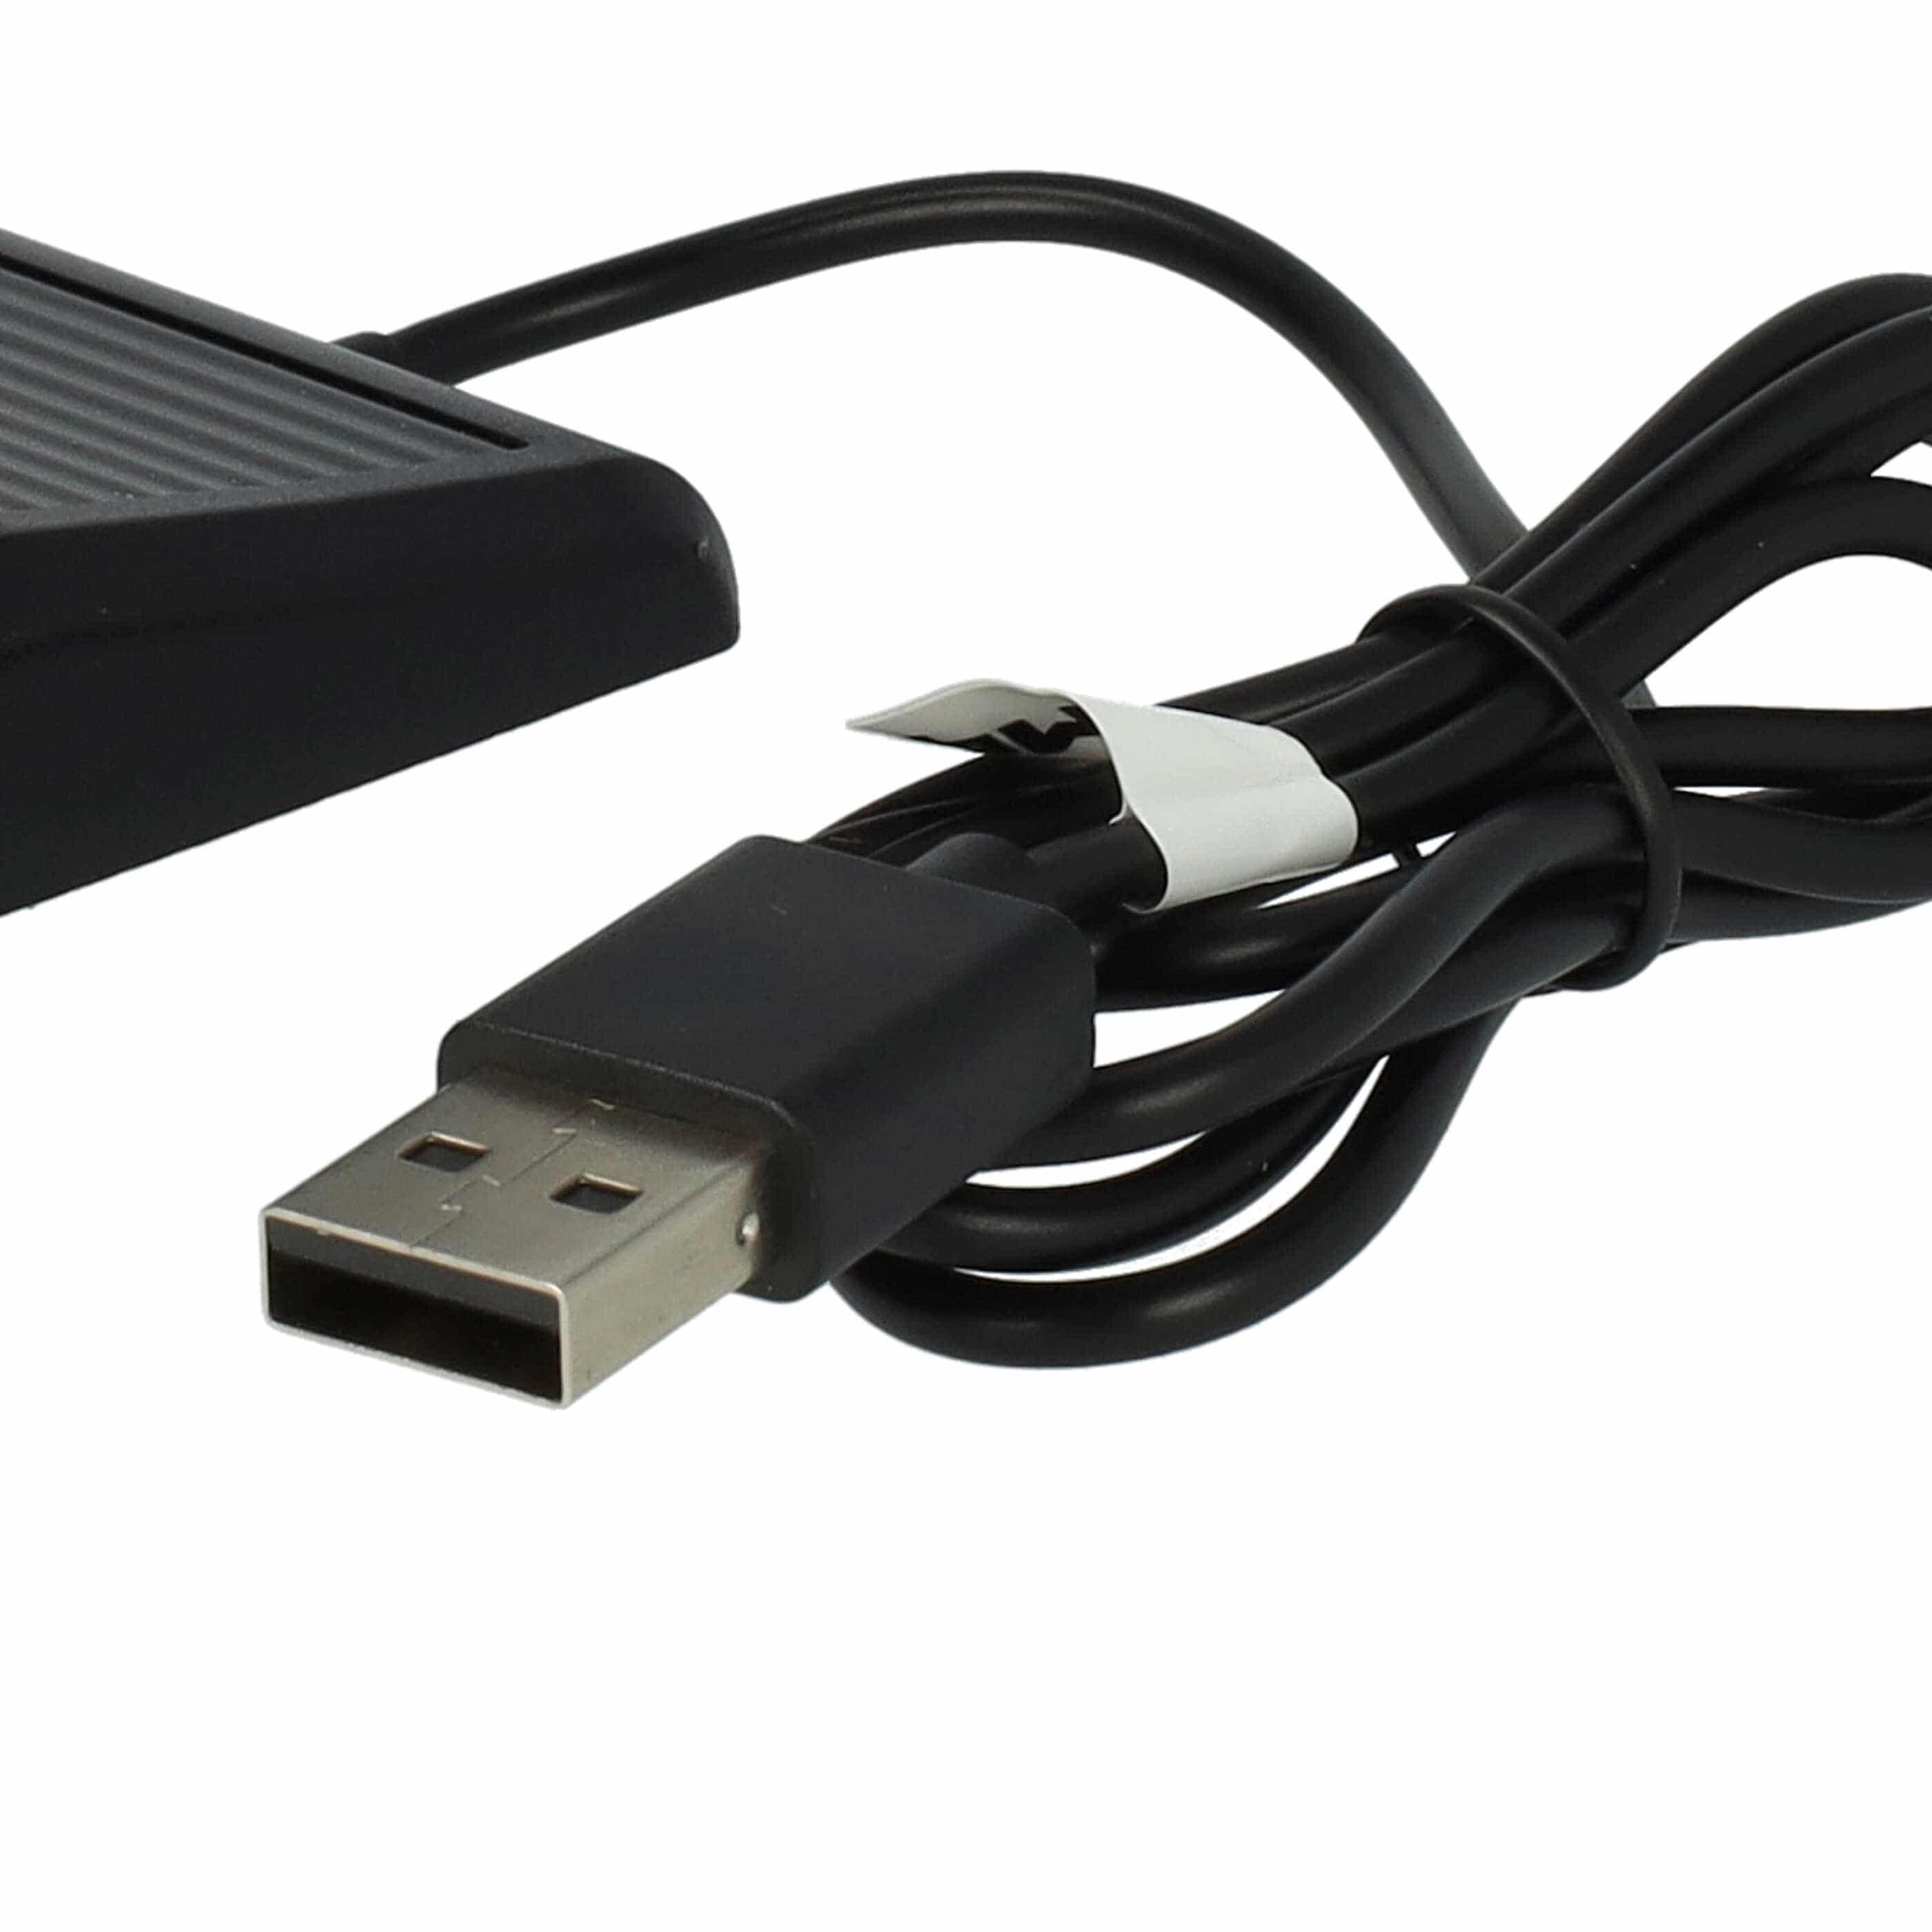 USB-Ladestation passend für Mobvoi TicWatch E3, Pro 3, Pro 3 LTE Smartwatch - Ladeschale + Ladekabel, 100 cm